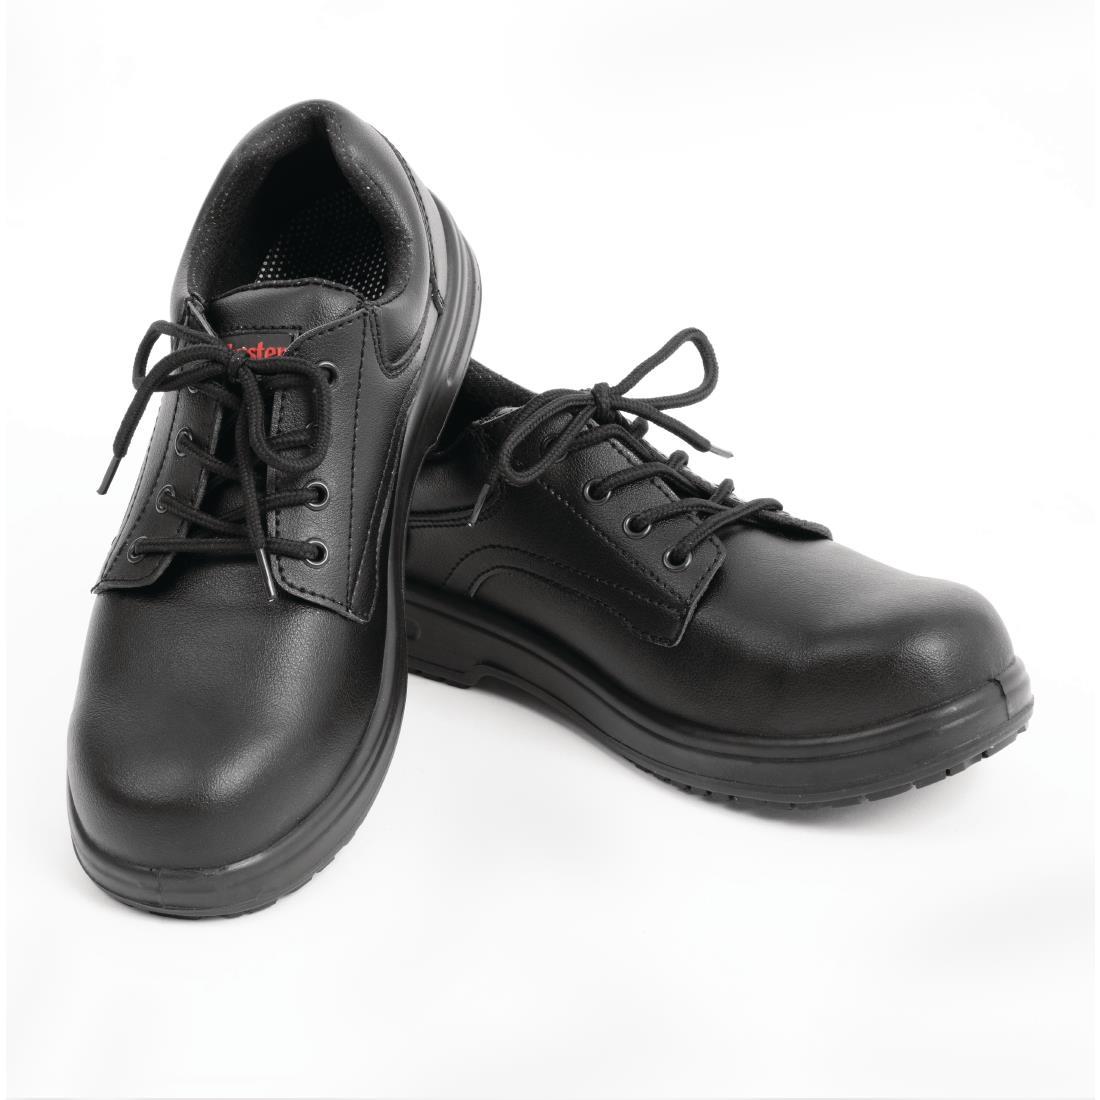 Slipbuster Basic Toe Cap Safety Shoes Black 46 - BB497-46  - 4